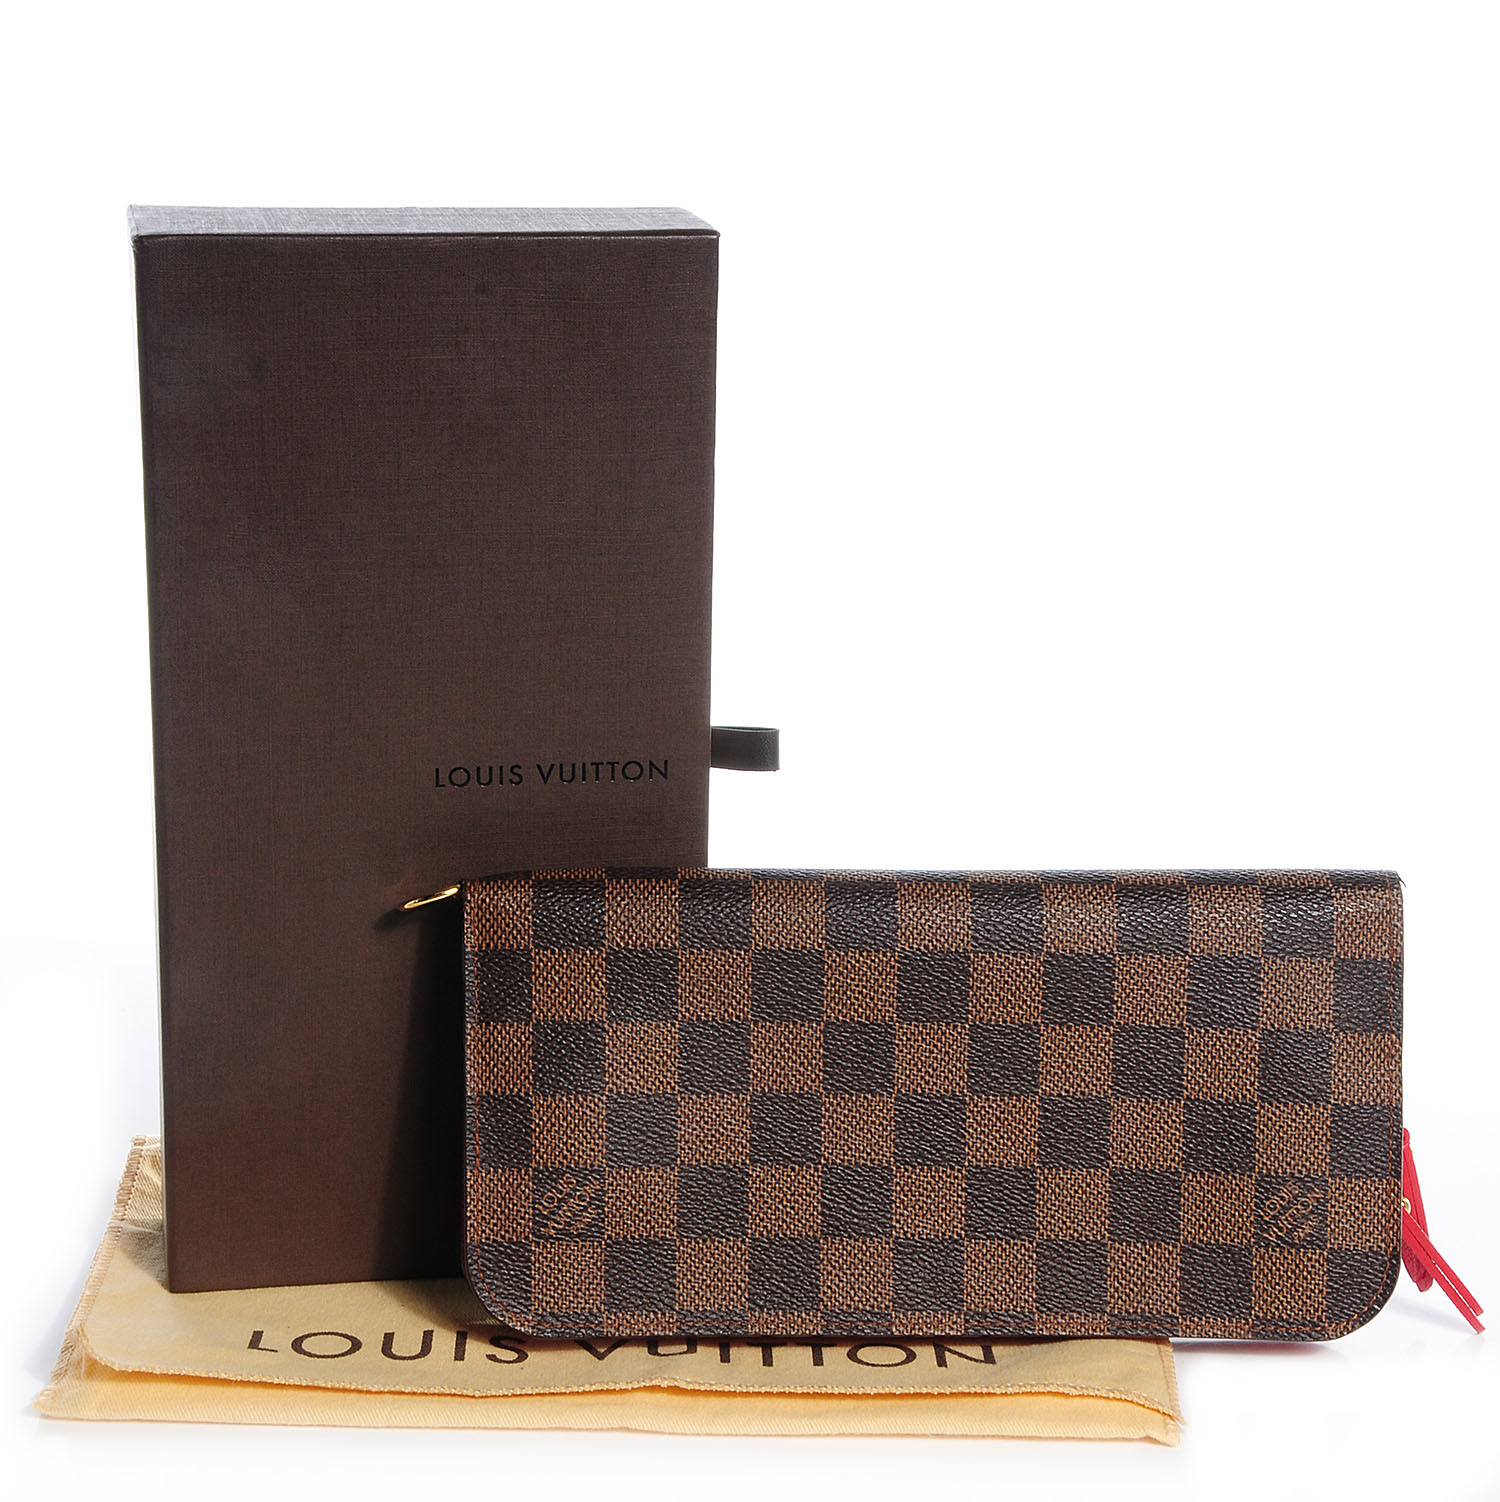 Louis Vuitton, Bags, Authentic Louis Vuitton Damier Ebene Zipper Wallet